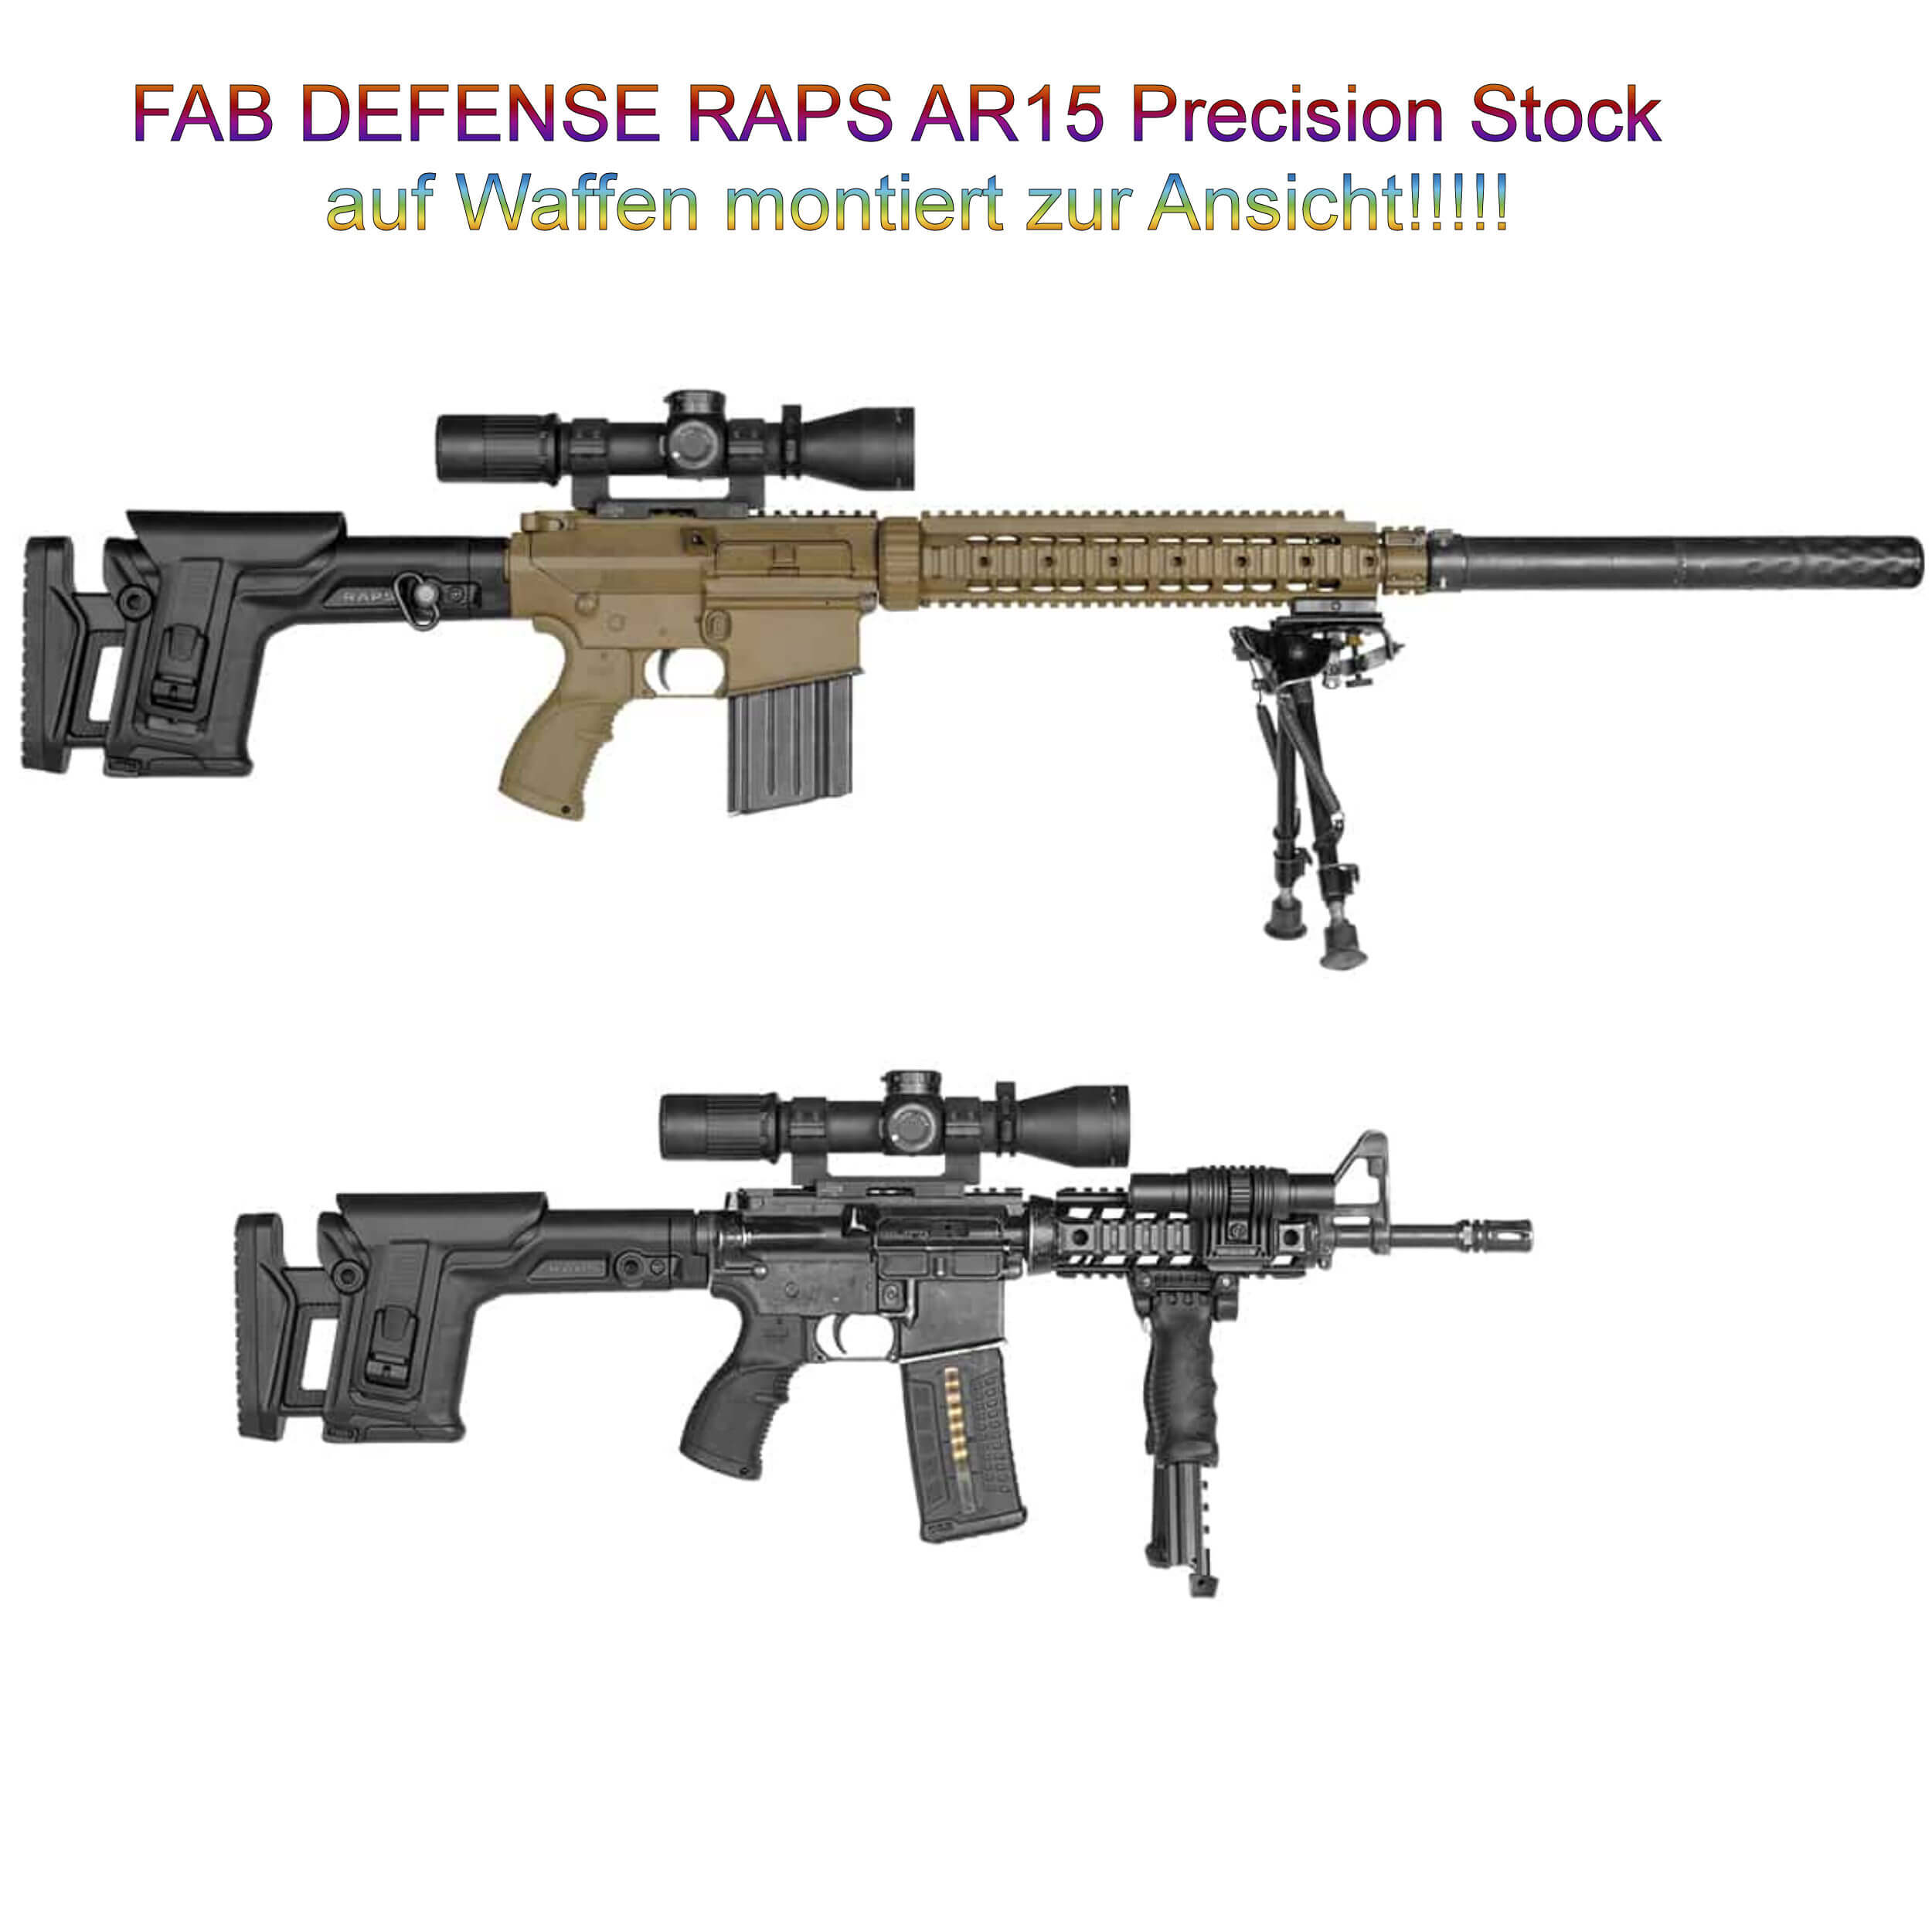 RAPS Sniper Präzisionsschaft für M-16 / AR15 / SR-25